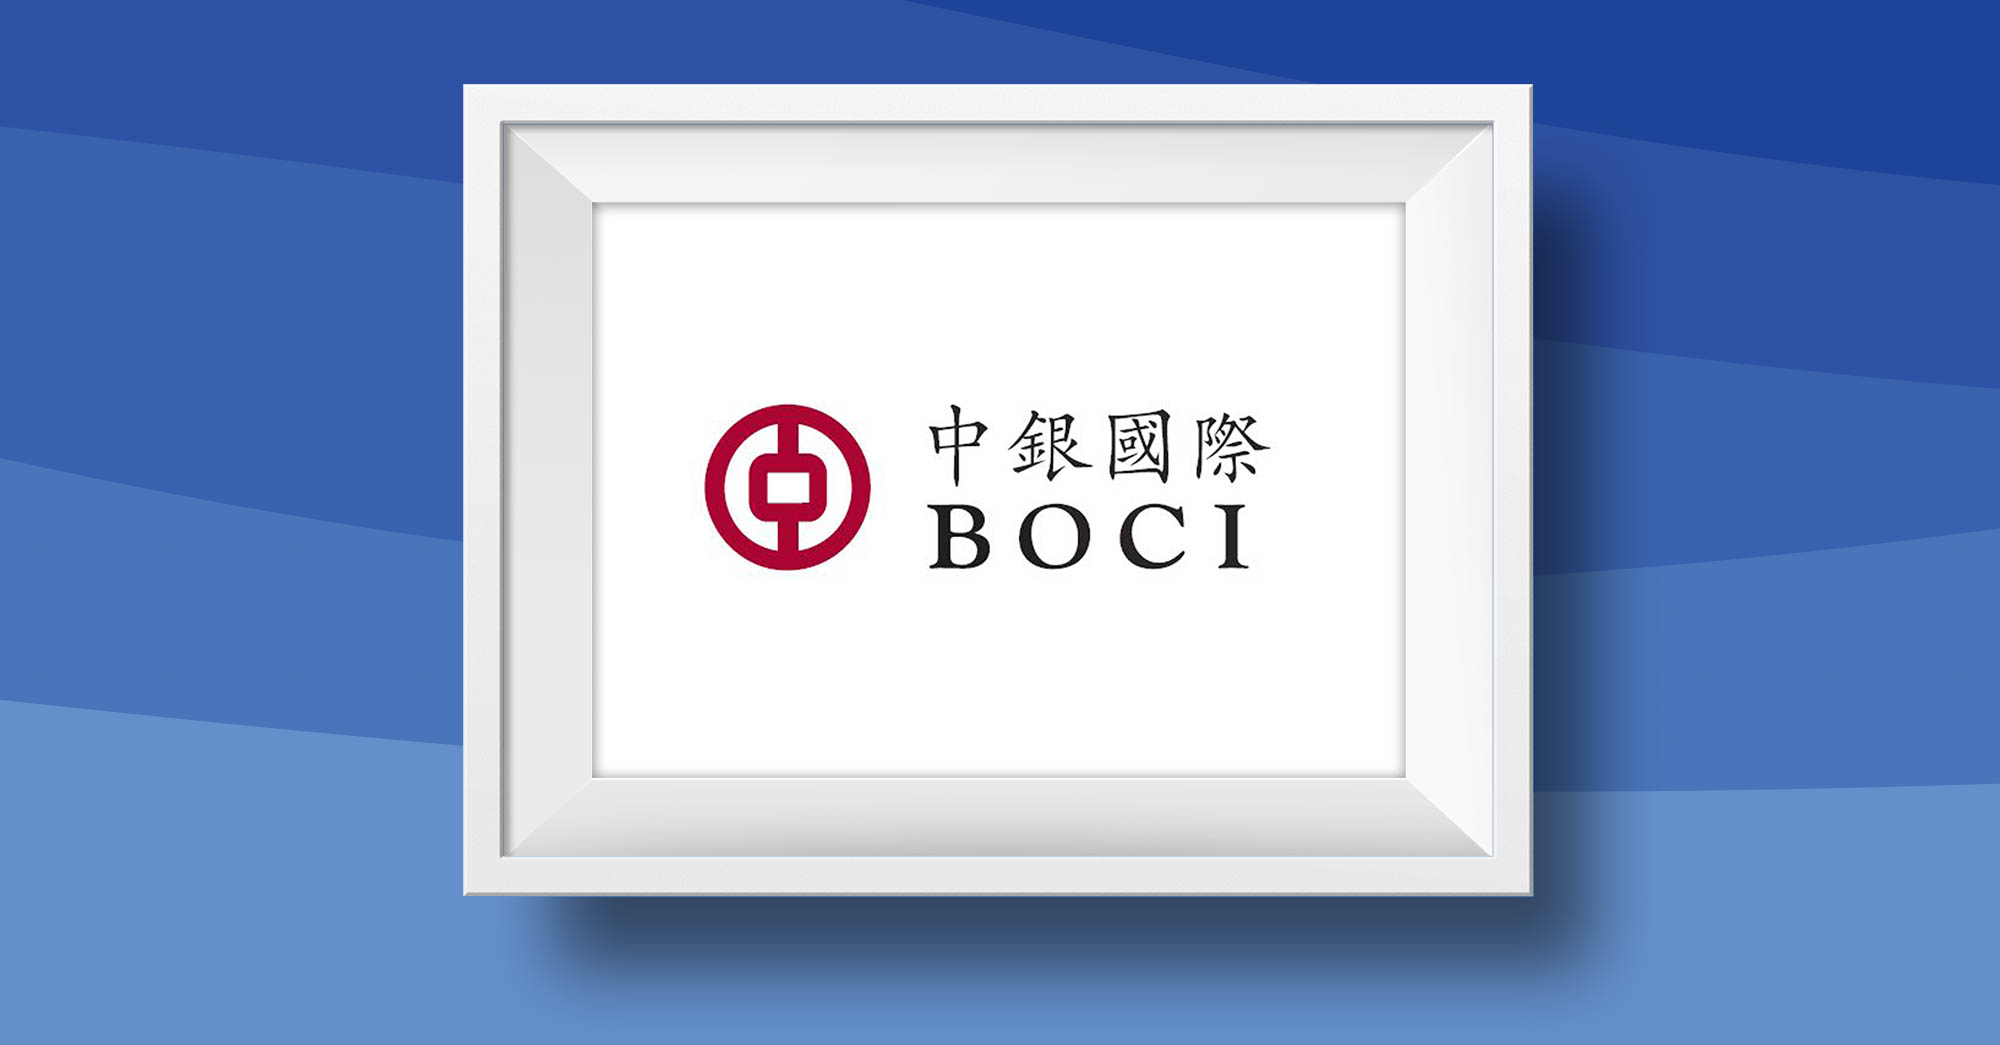 BOCI & Global Shares Announce Partnership